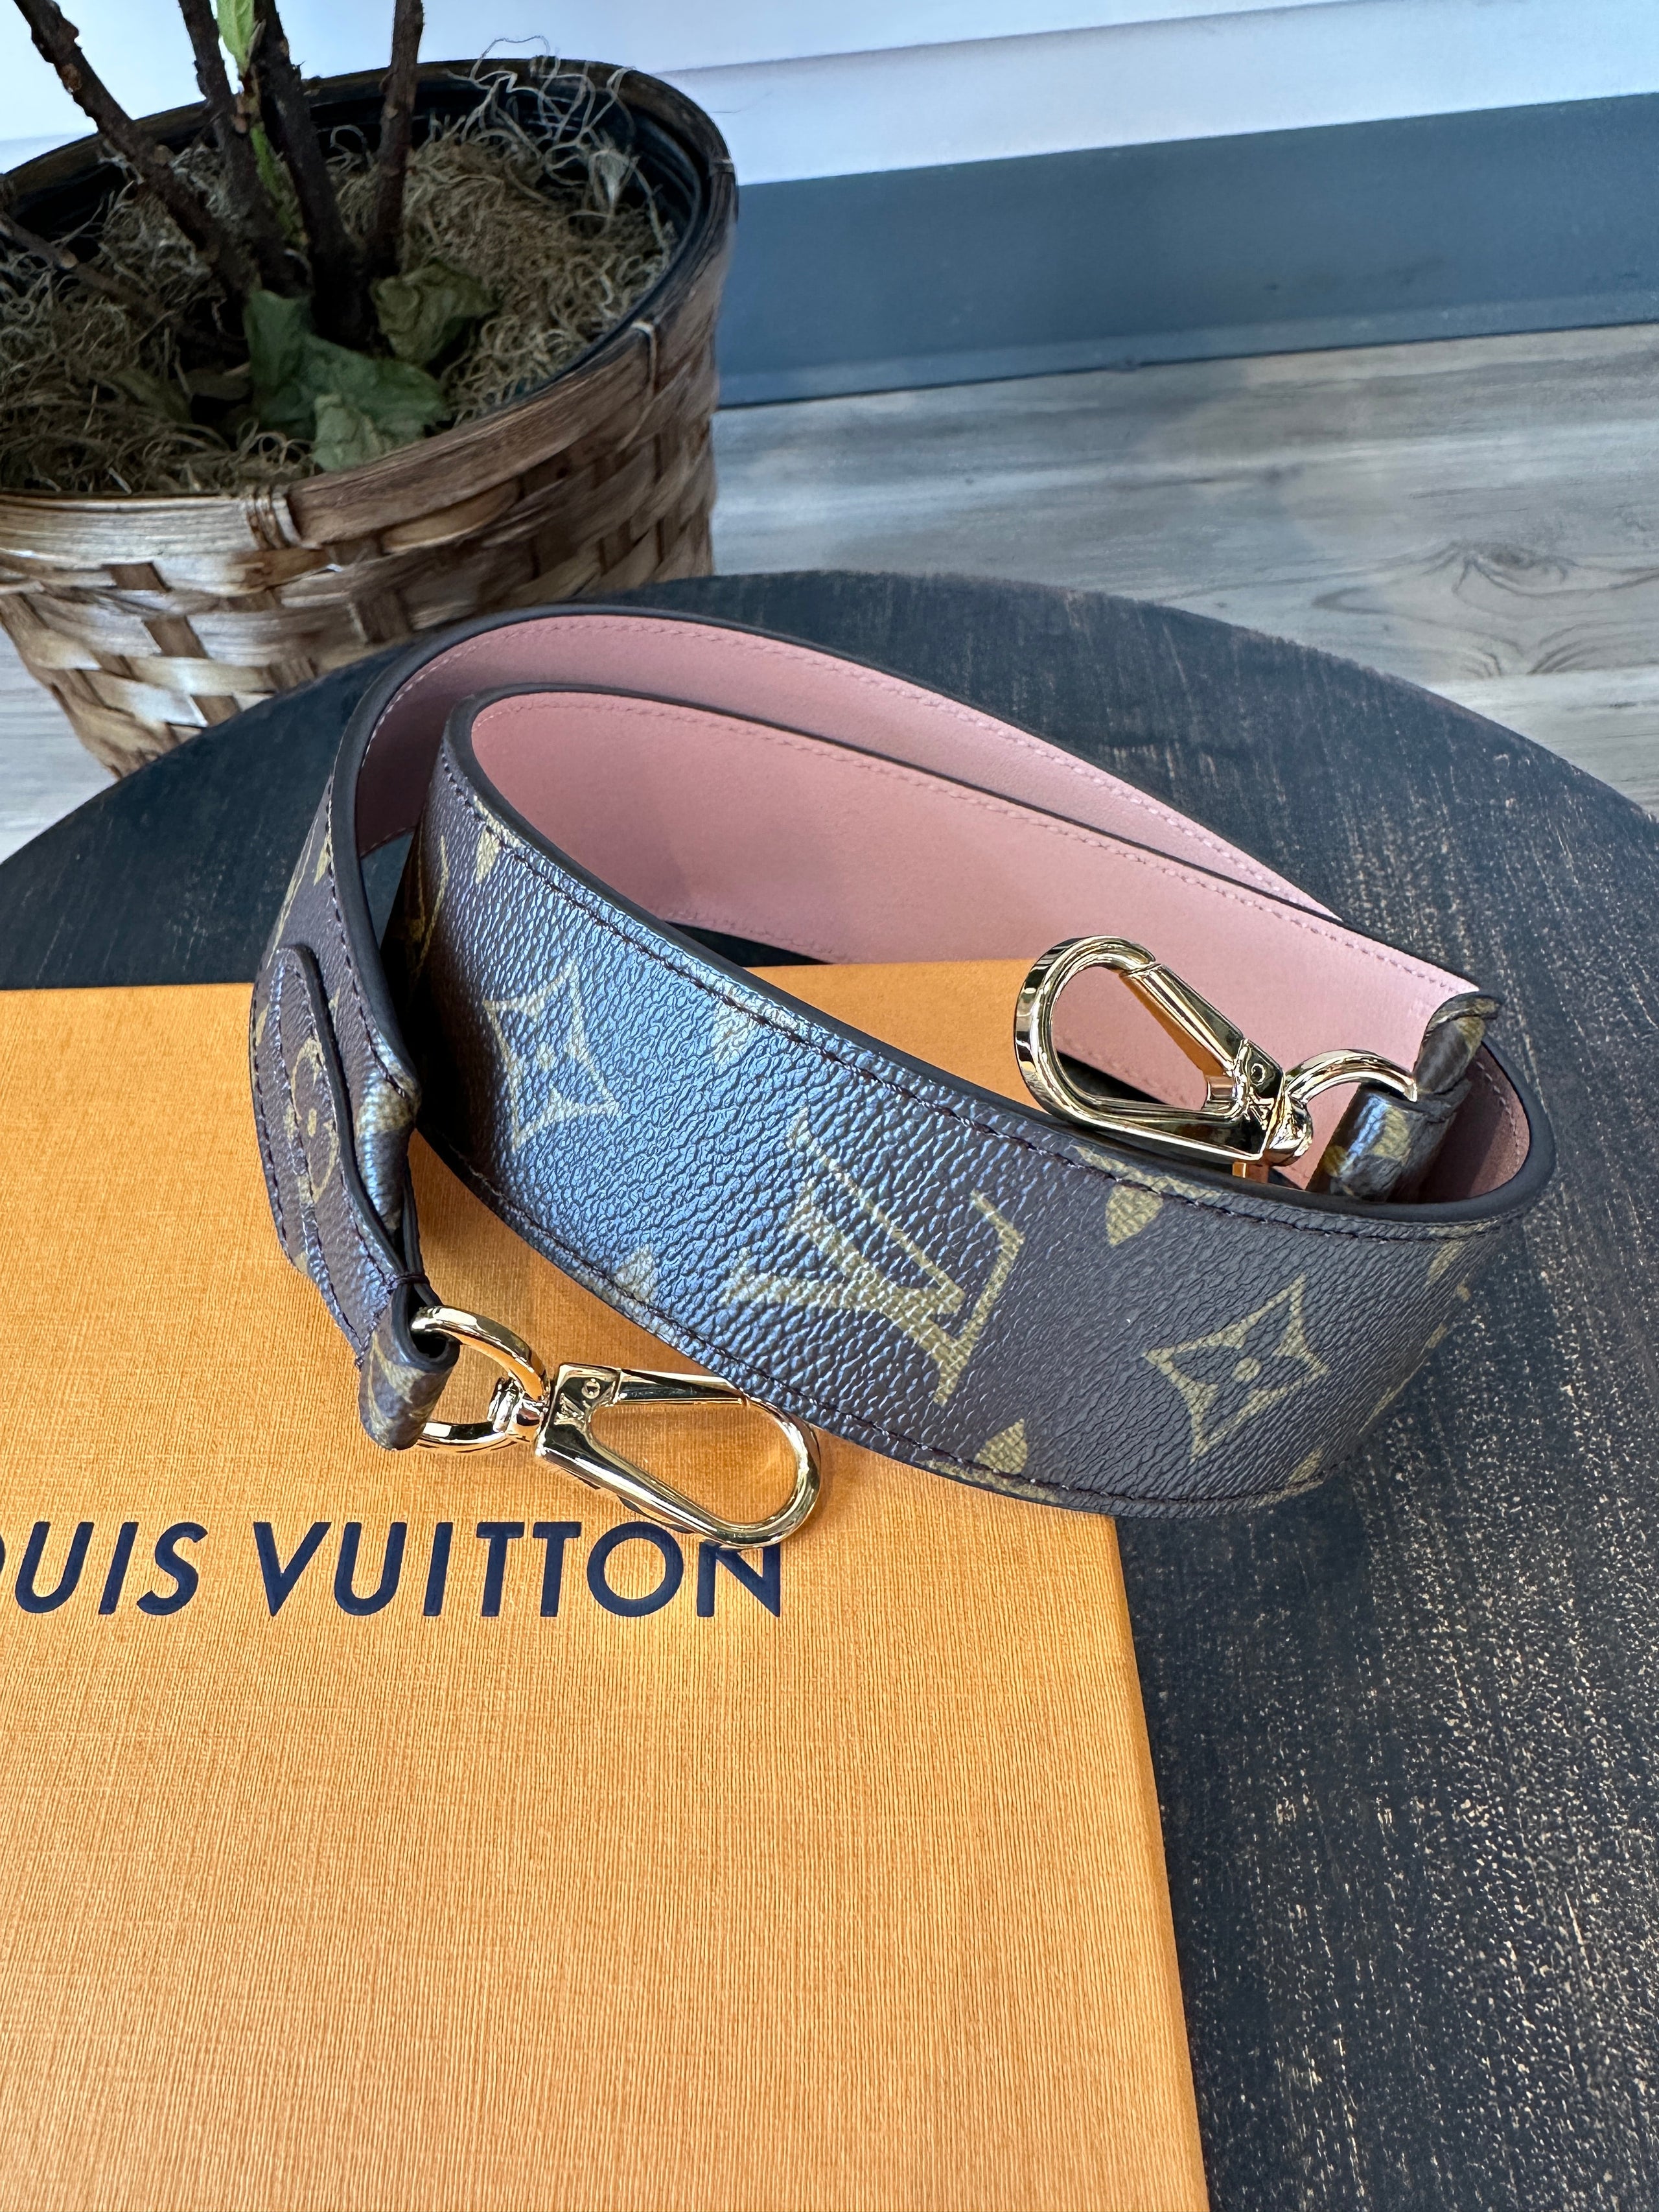 Louis Vuitton Louis Vuitton Monogram Canvas Shoulder Strap For